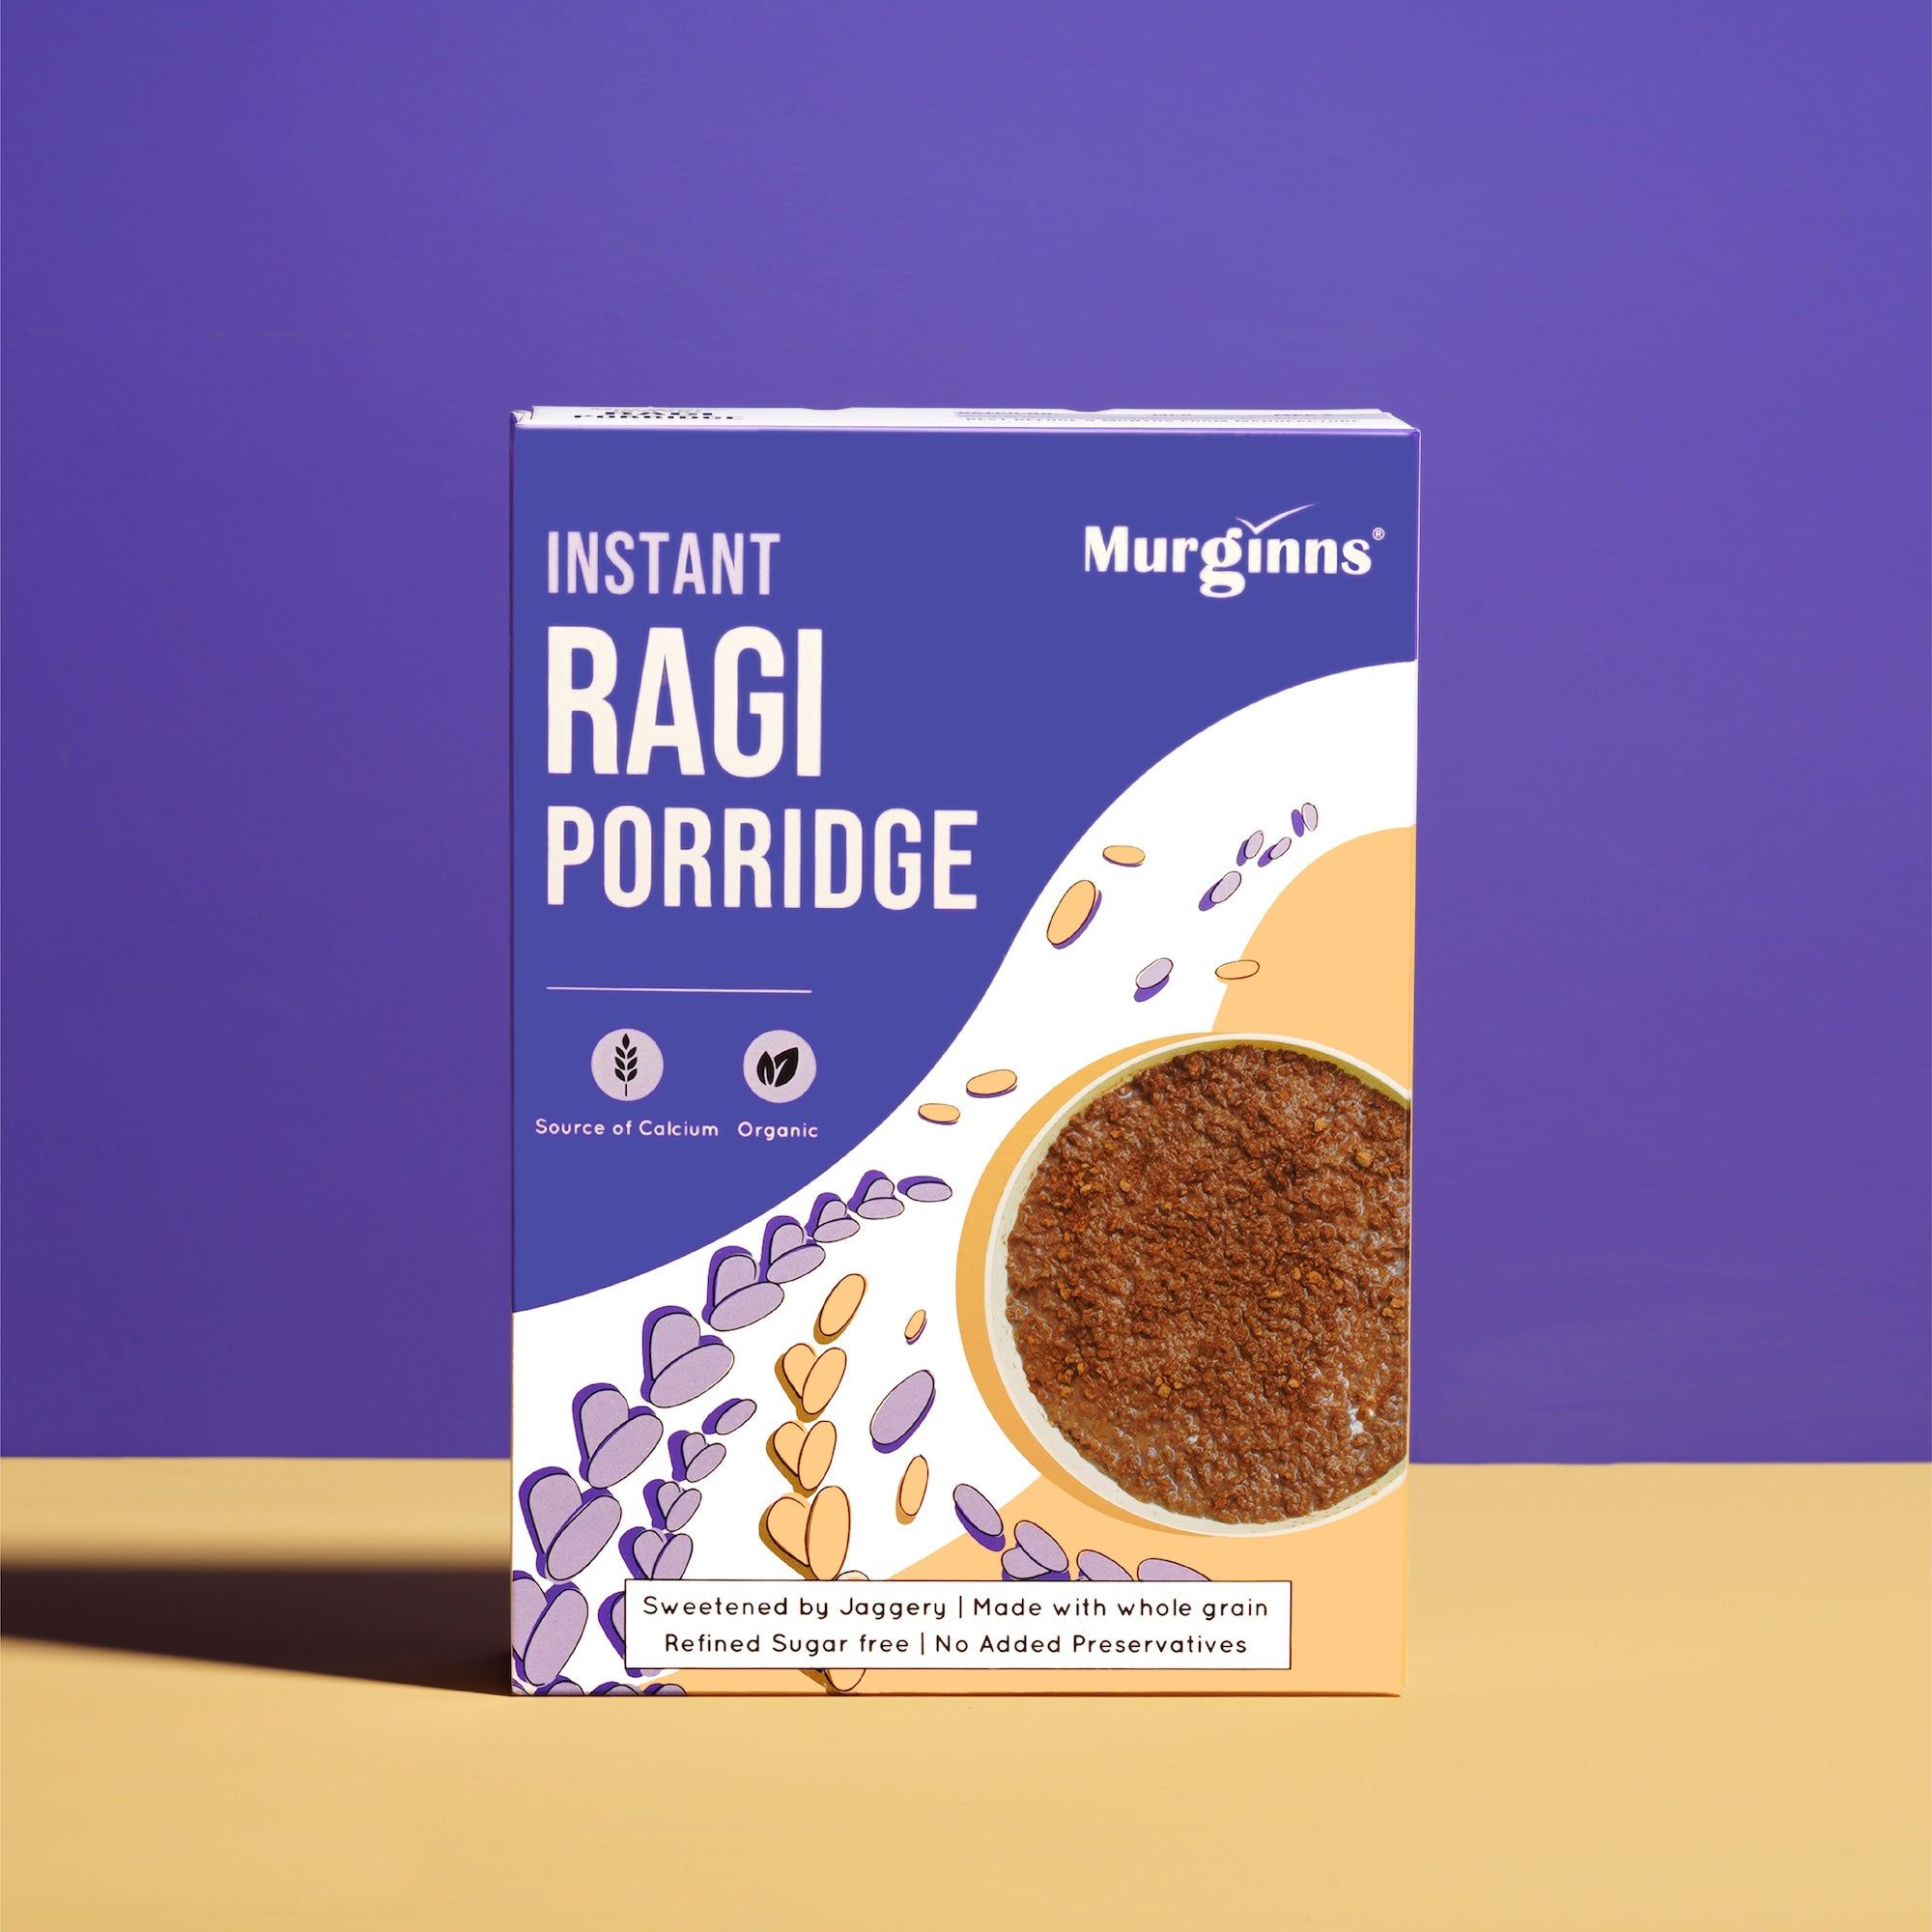 Murginns Instant Ragi Porridge Image